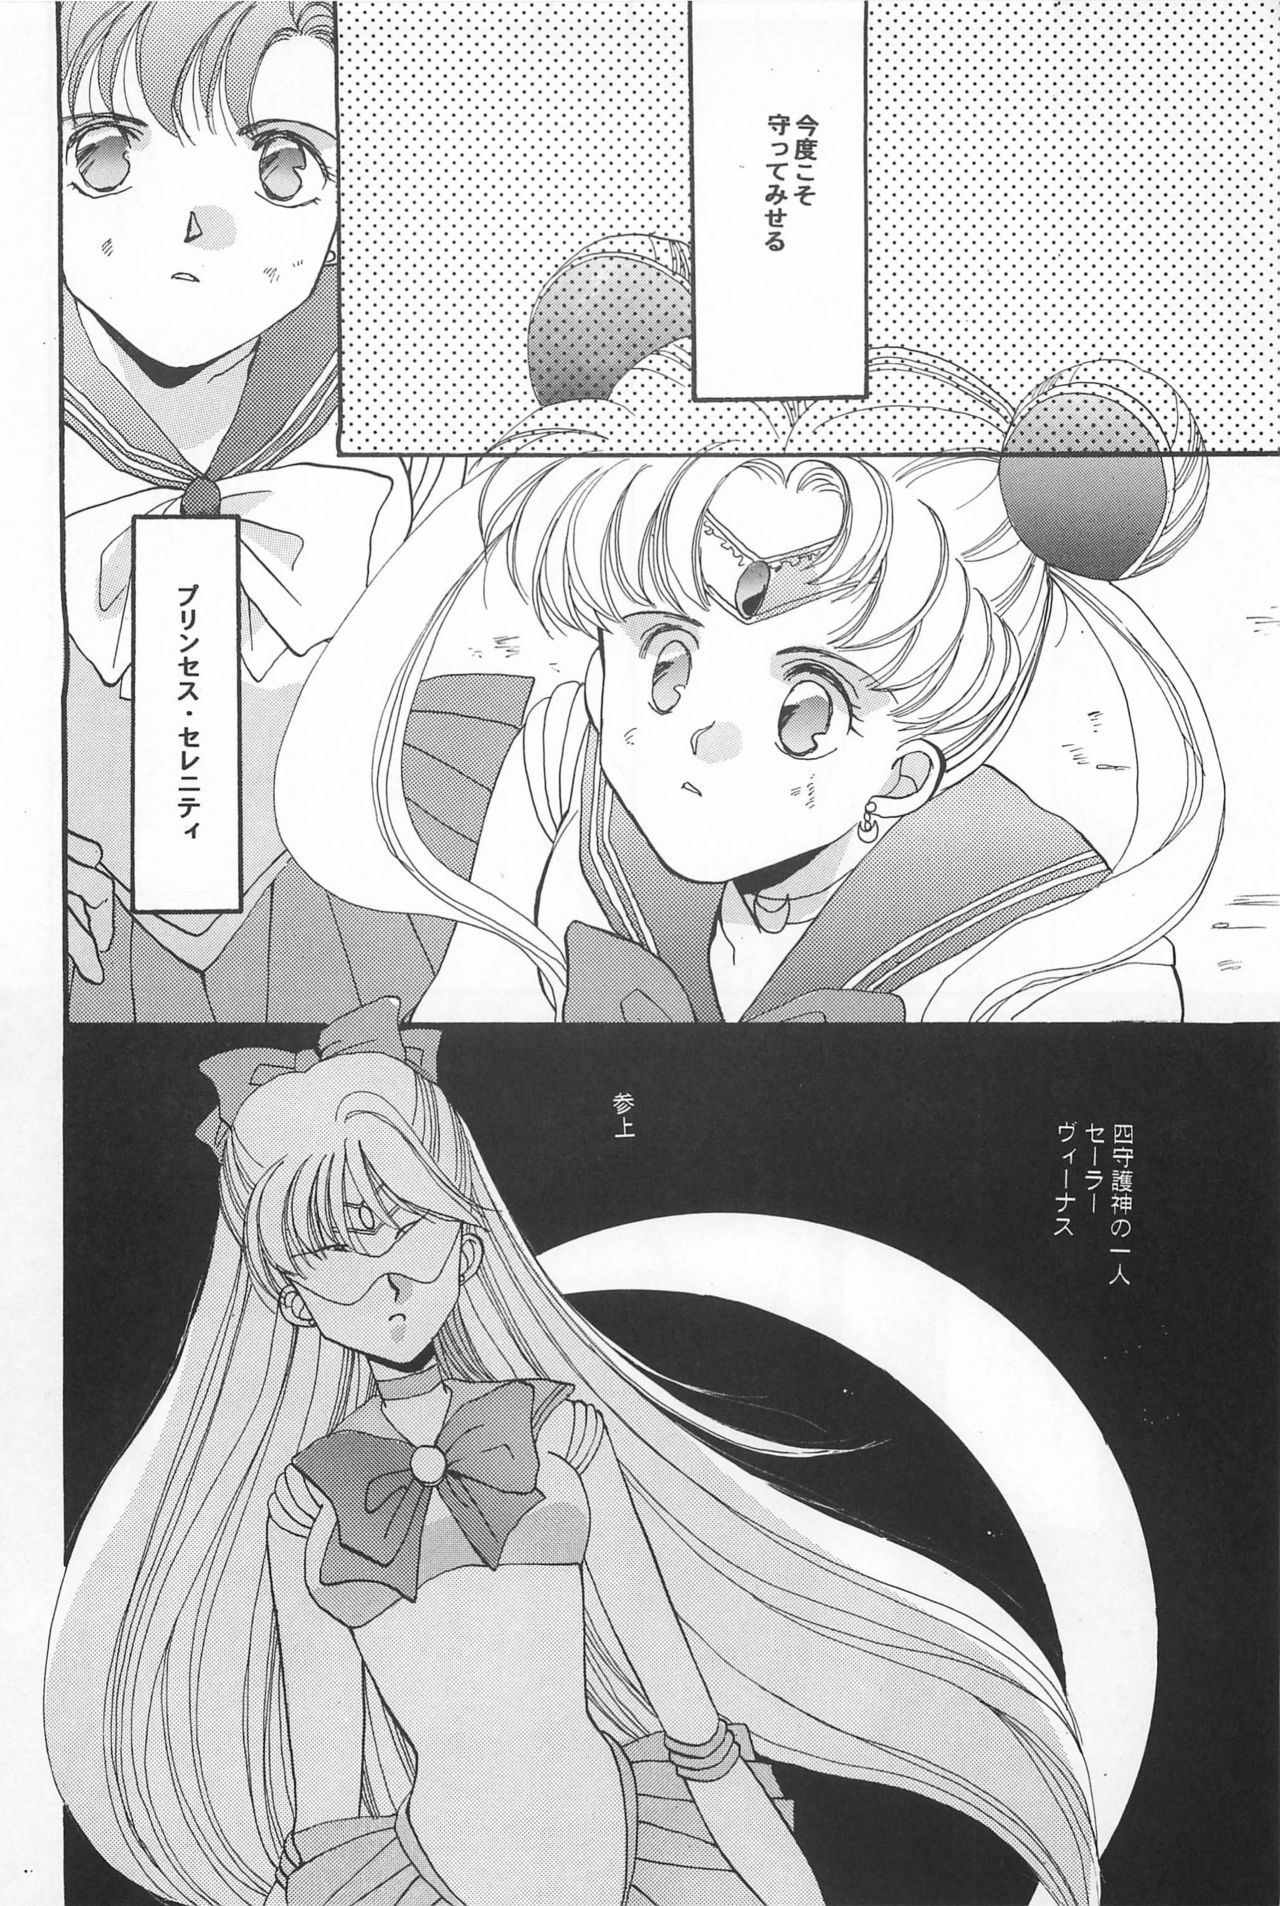 [Hello World (Muttri Moony)] Kaze no You ni Yume no You ni - Sailor Moon Collection (Sailor Moon) 109